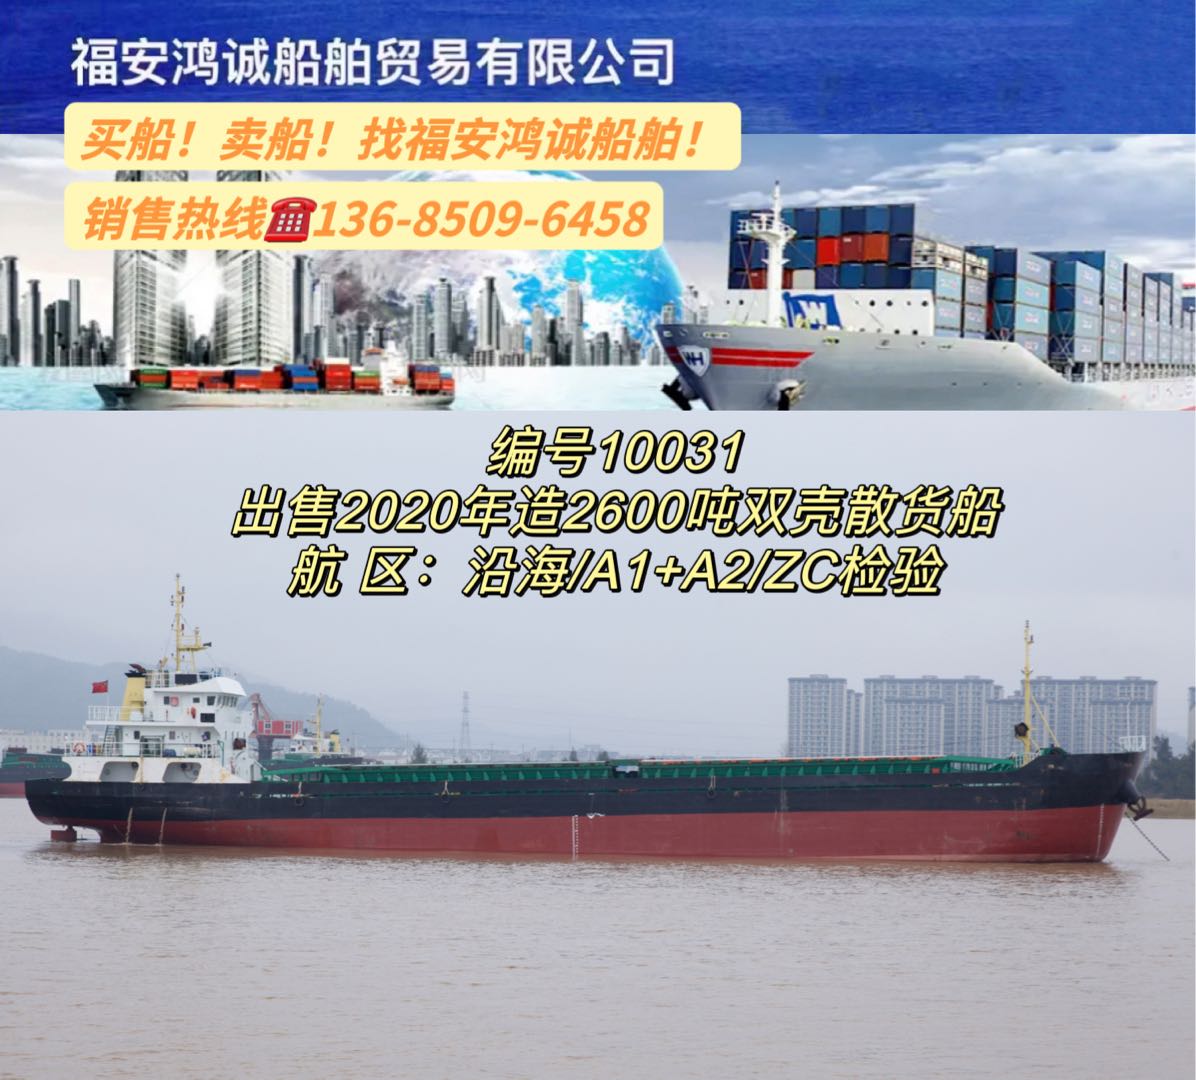 出售2020年造2600吨双壳散货船